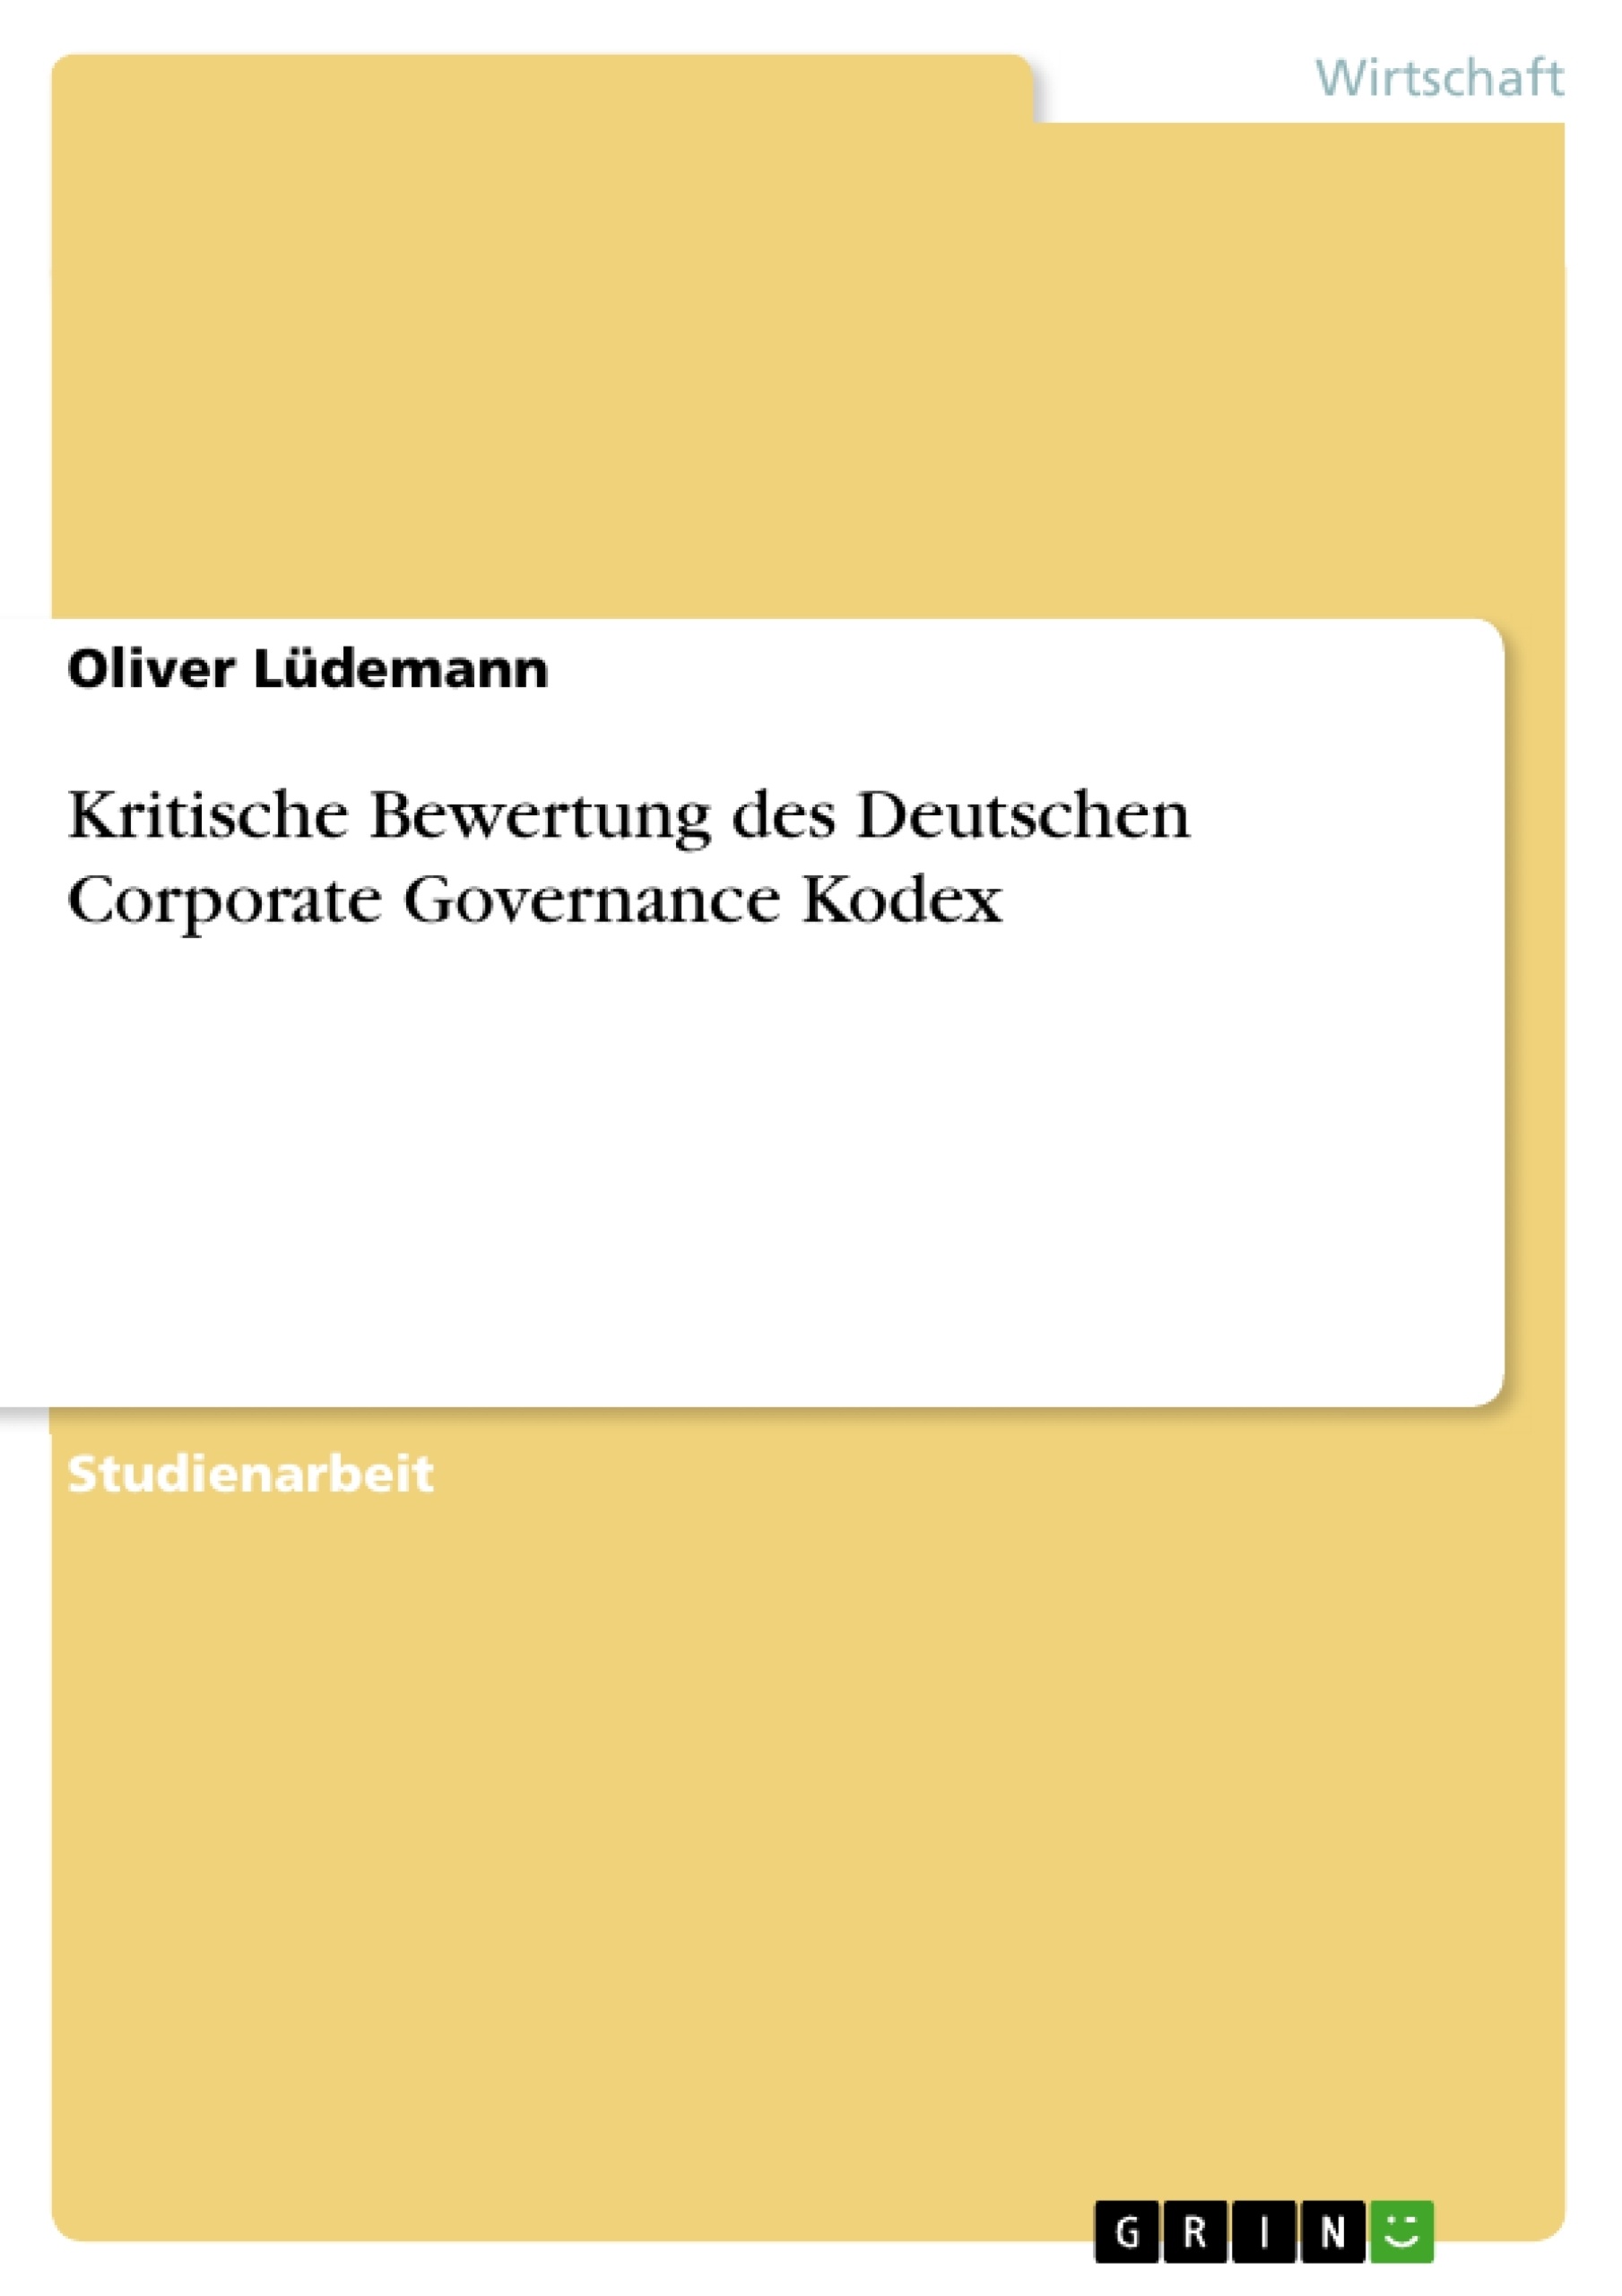 Título: Kritische Bewertung des Deutschen Corporate Governance Kodex